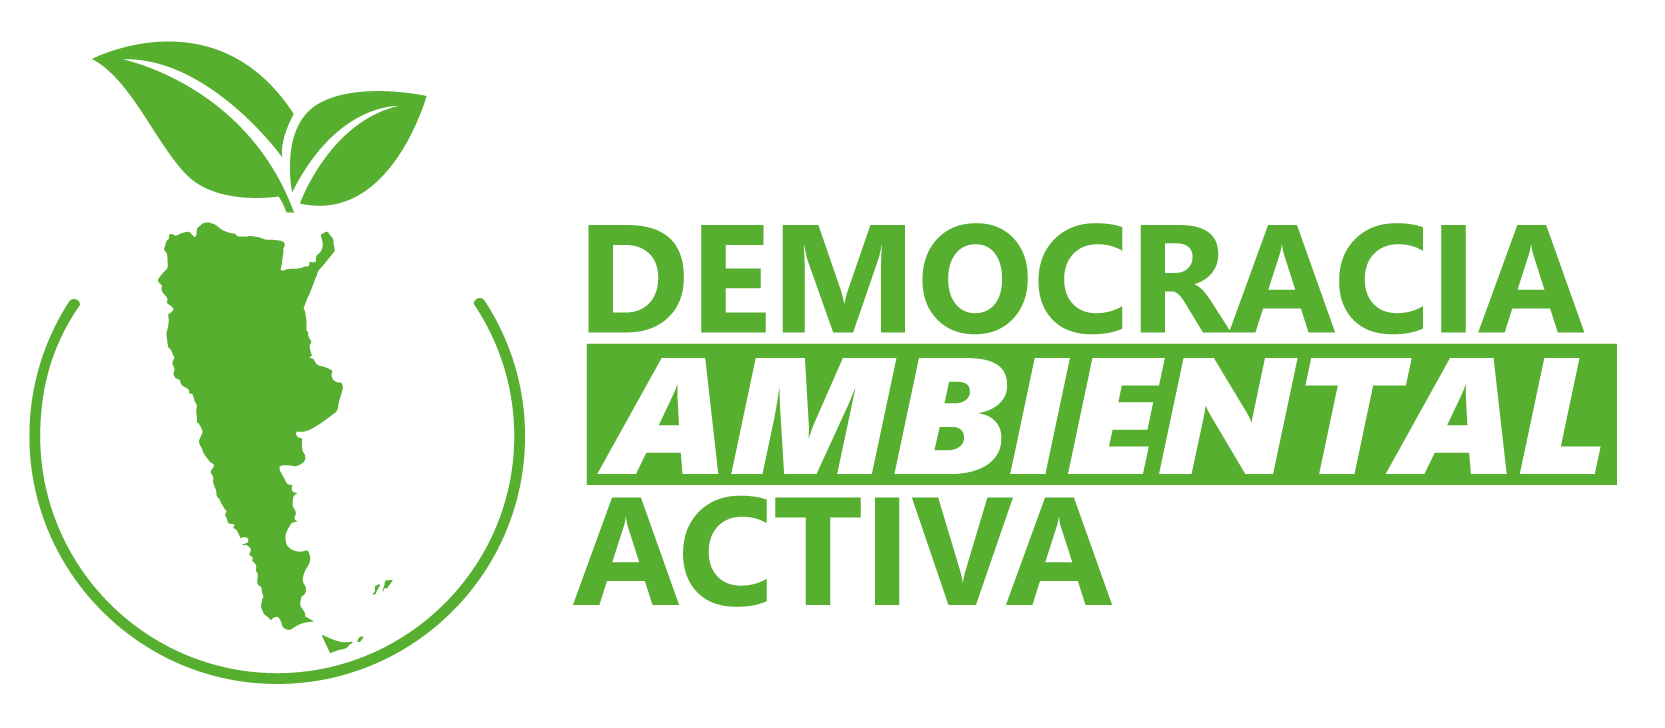 Democracia Ambiental Activa